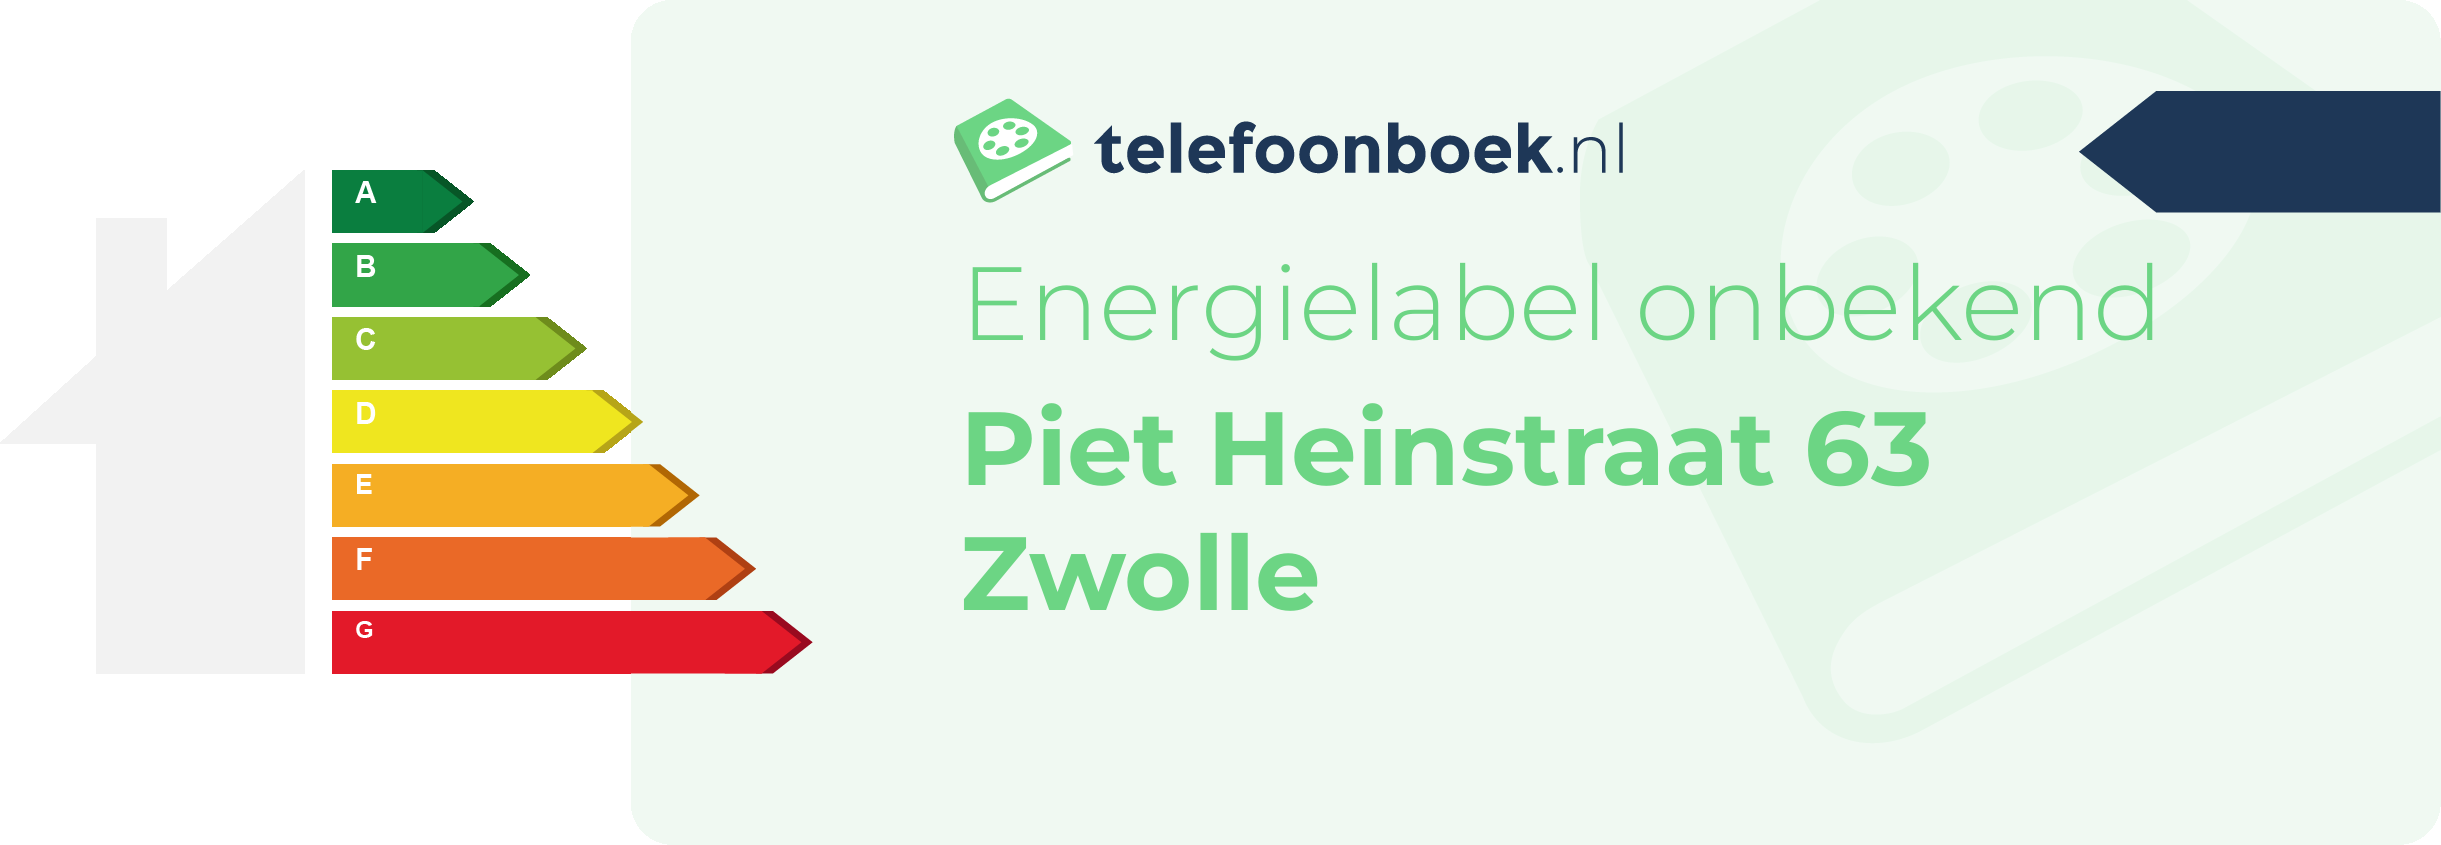 Energielabel Piet Heinstraat 63 Zwolle